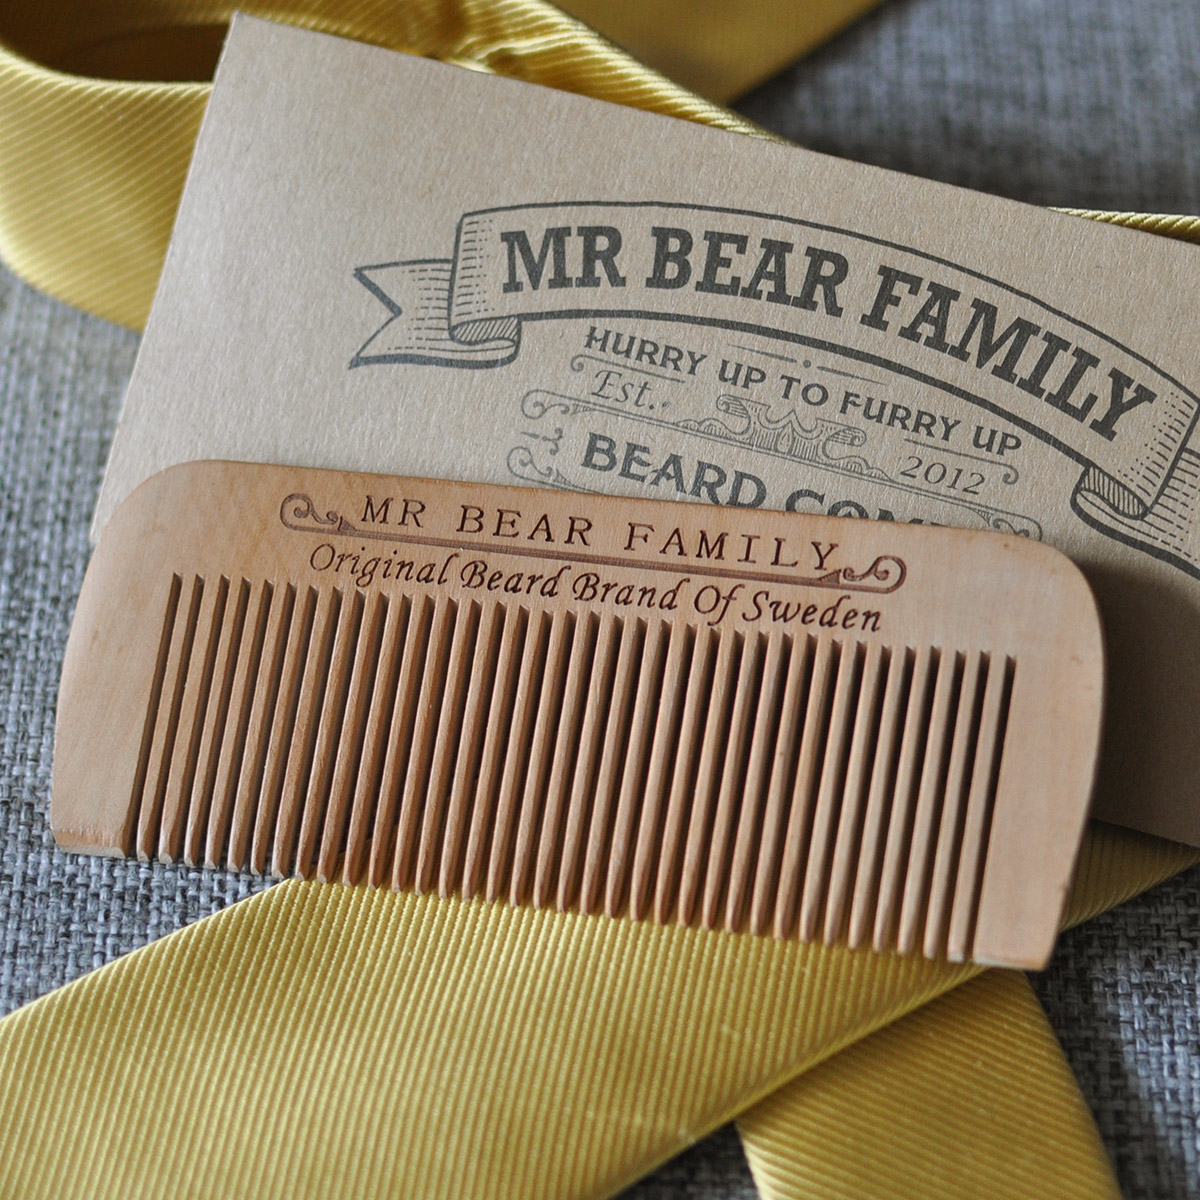 Beard comb from Mr Bear Family